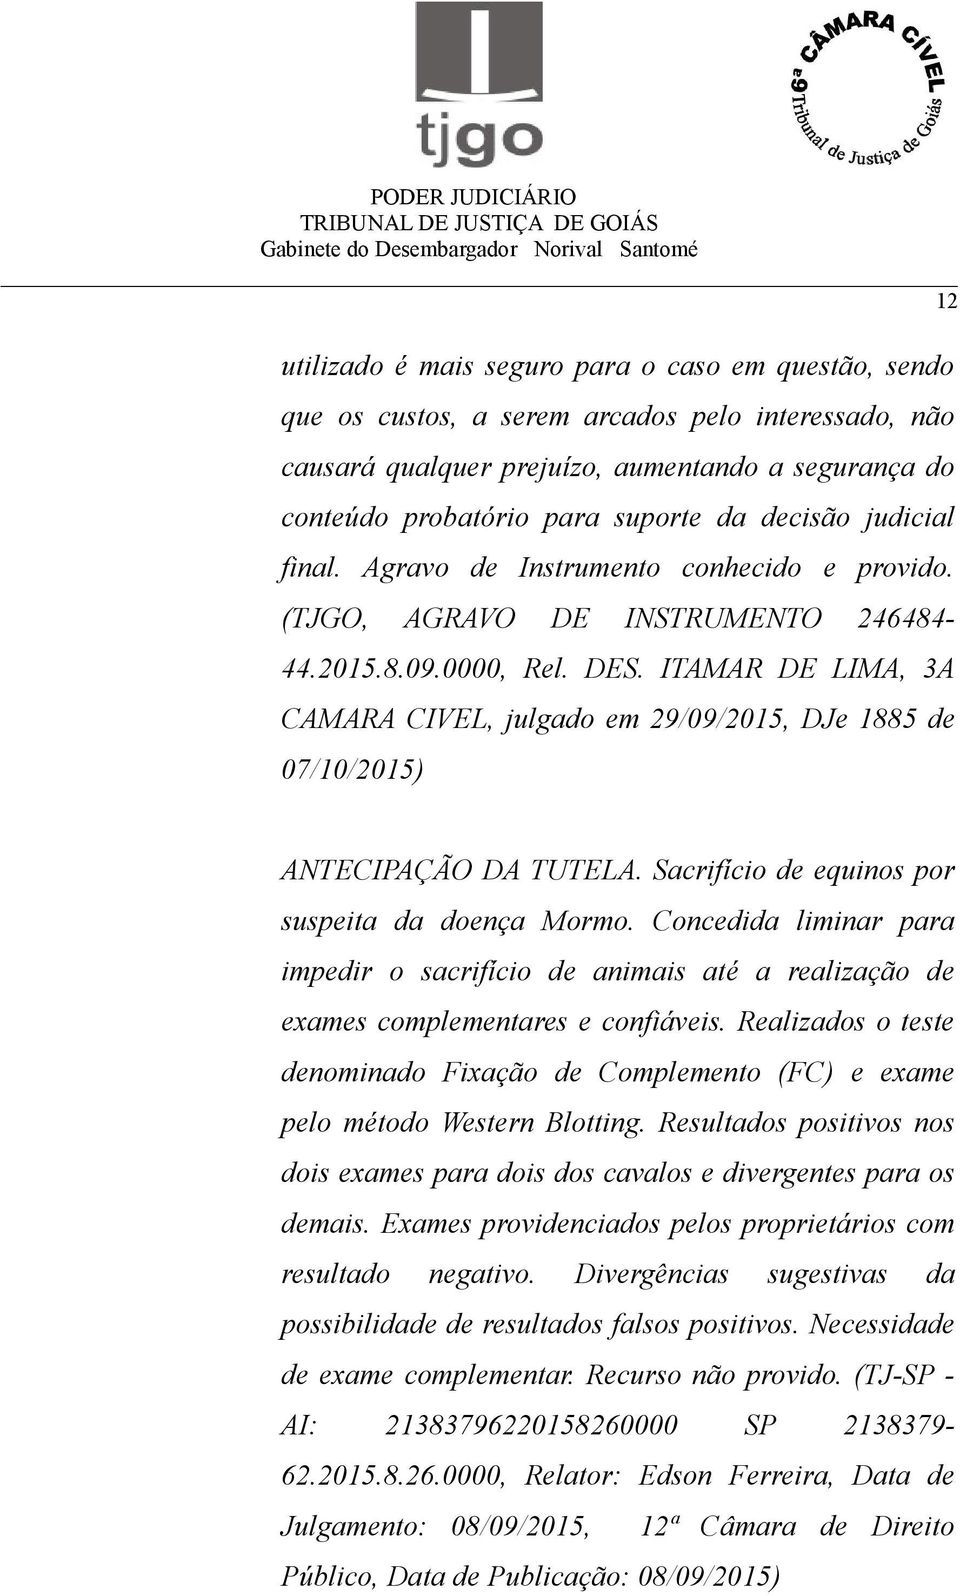 ITAMAR DE LIMA, 3A CAMARA CIVEL, julgado em 29/09/2015, DJe 1885 de 07/10/2015) ANTECIPAÇÃO DA TUTELA. Sacrifício de equinos por suspeita da doença Mormo.